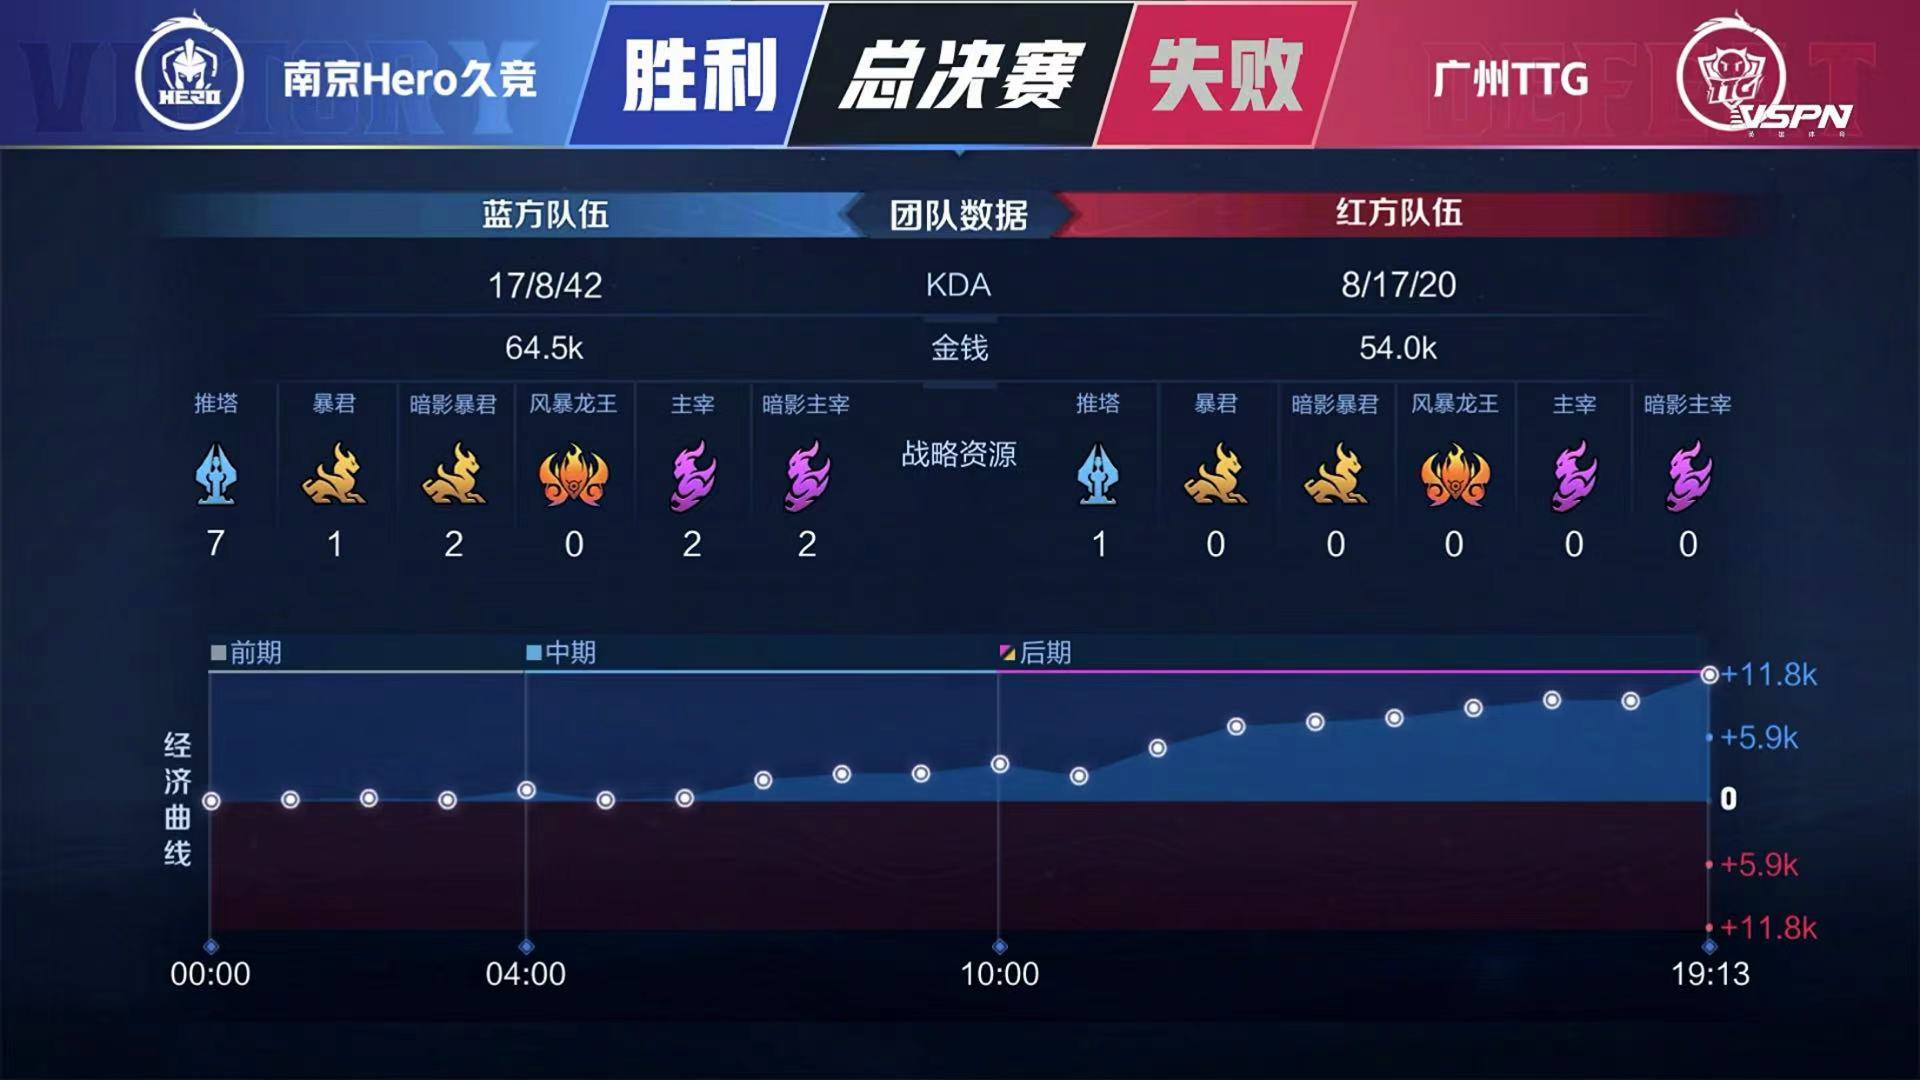 [战报] 连夺两冠！南京Hero久竞战胜广州TTG 捧起银龙杯！